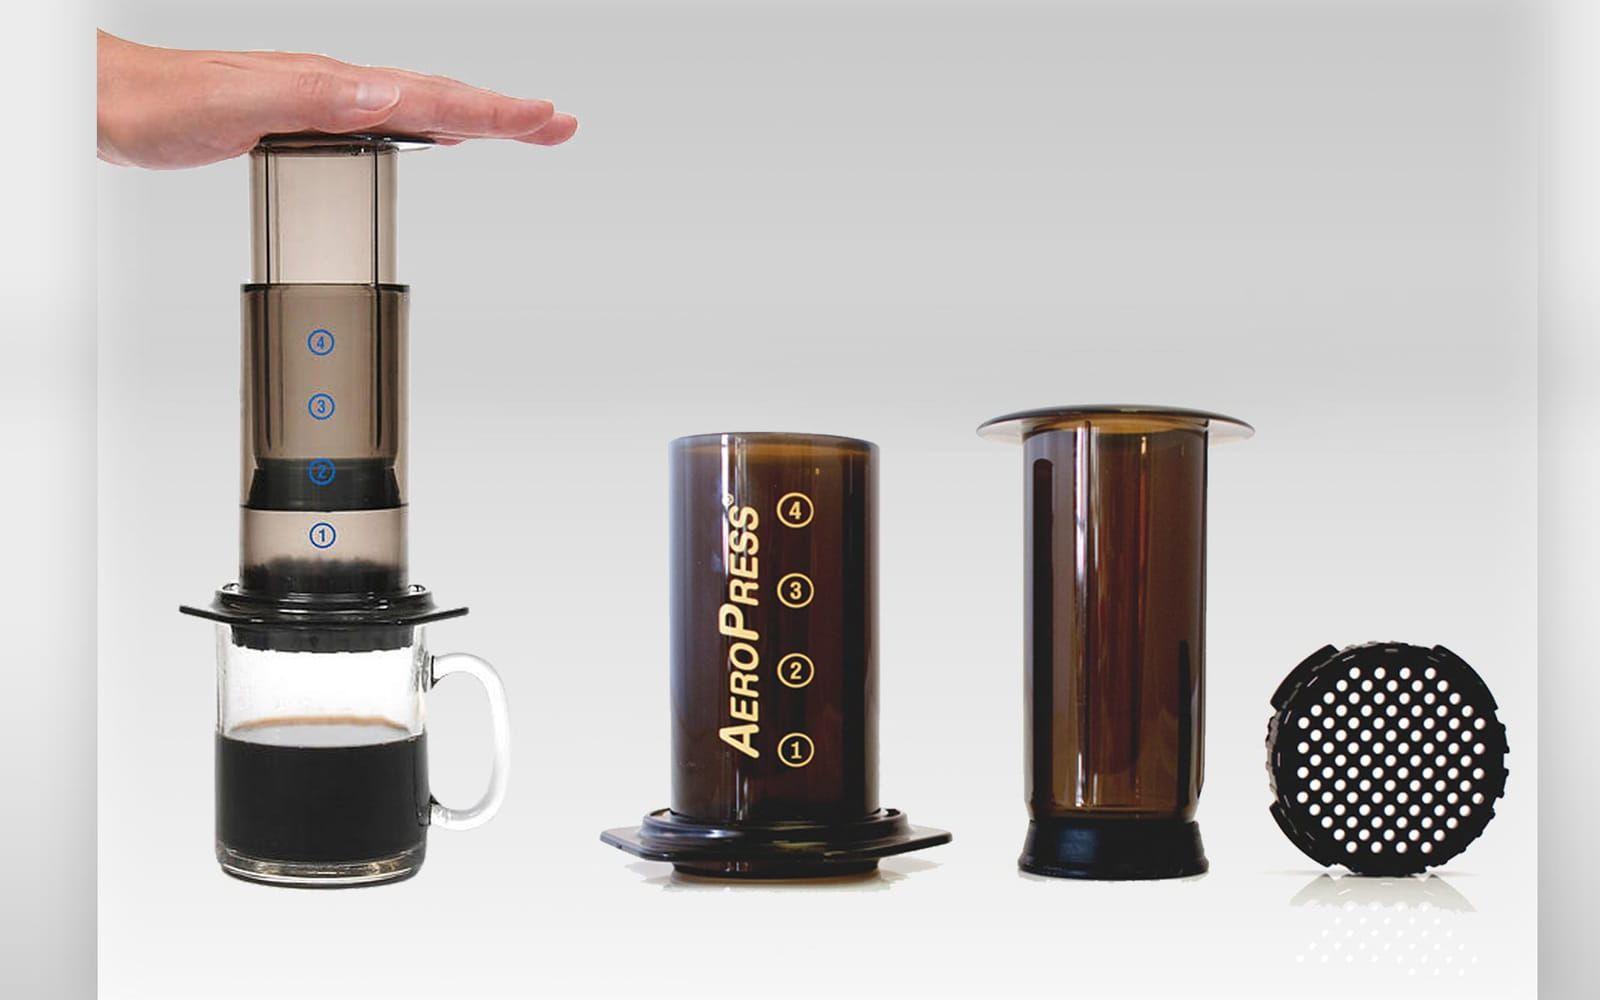 <strong>NY KAFFEMETOD:</strong> Aeropress, 400 kronor. Om någon nära dig älskar kaffe är det här rätt julklapp. Kaffe och het vatten blandas i behållaren och trycks sedan genom ett filter med hjälp av luft. Bryggmetoden tillåter nästan oändliga variationer i tid, teknik och kaffestyrka. Inte konstigt att det hålls världsmästerskap i Aeropress-kaffe.